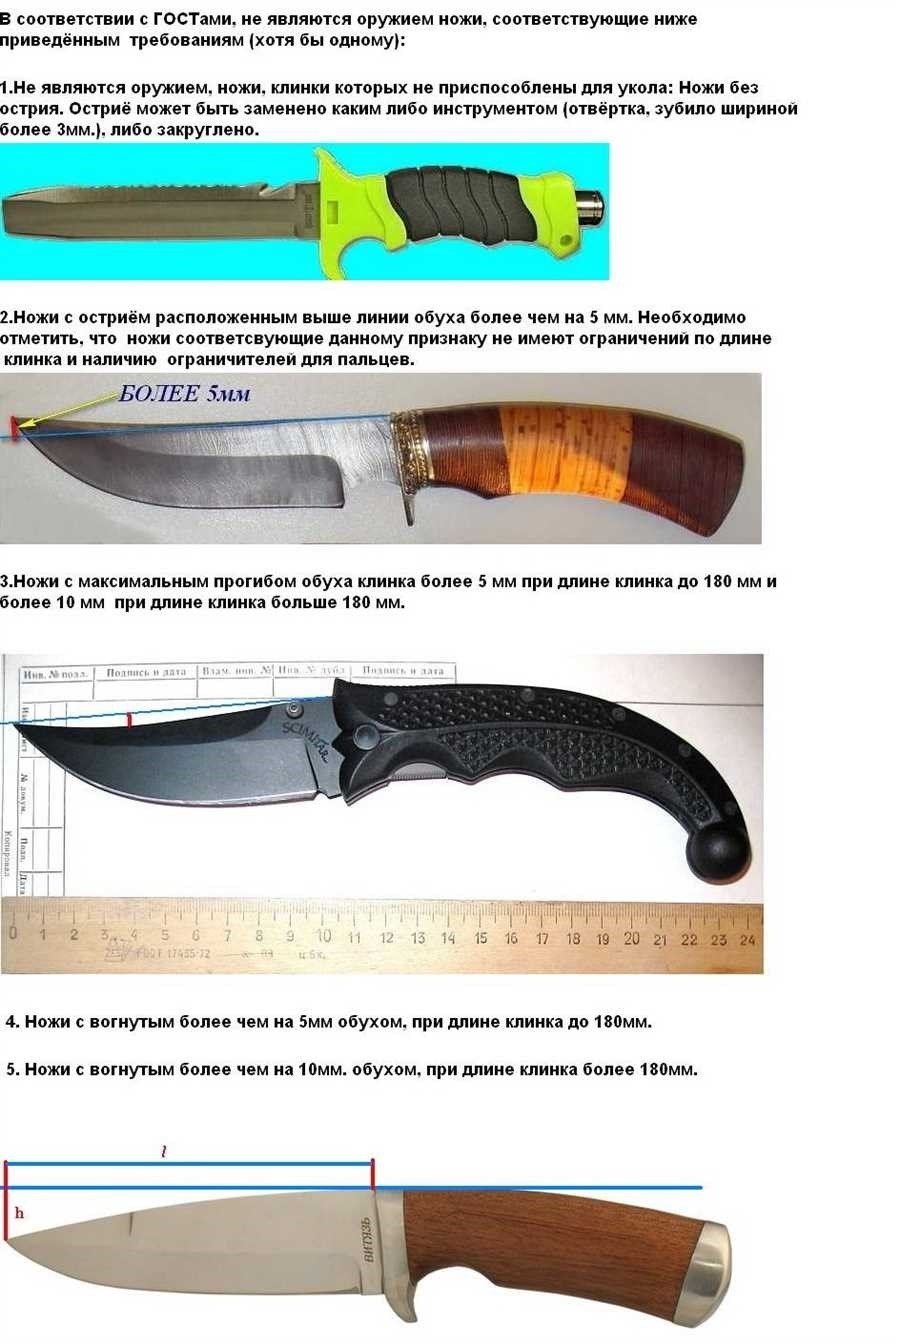 Ножи считающиеся холодным оружием в россии правовые аспекты и классификация